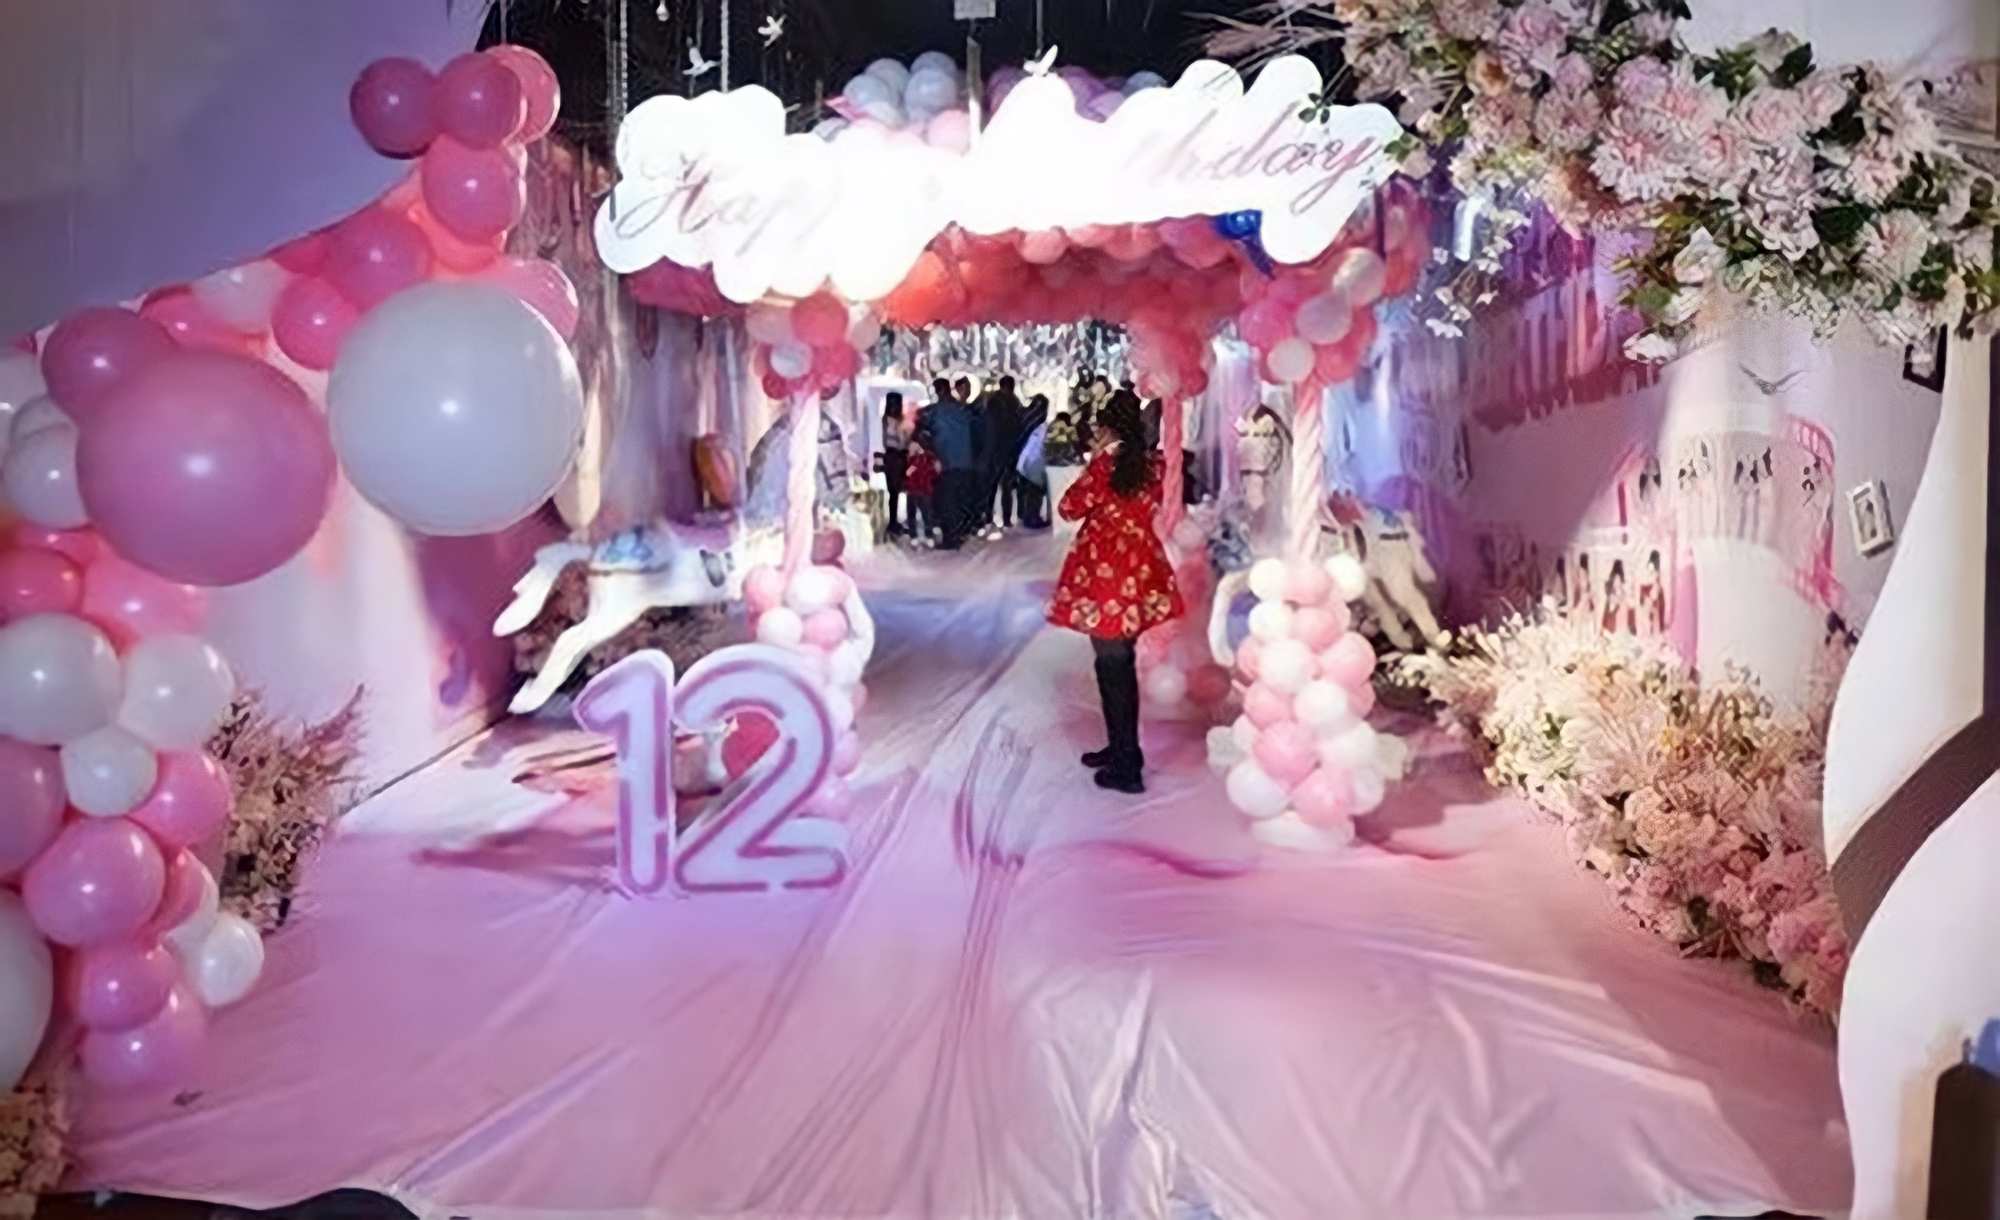 Trào lưu tổ chức sinh nhật tuổi 12 xa xỉ như đám cưới ở Trung Quốc: Món quà sĩ diện của bố mẹ, lời nguyền cho tâm hồn trẻ thơ - Ảnh 3.